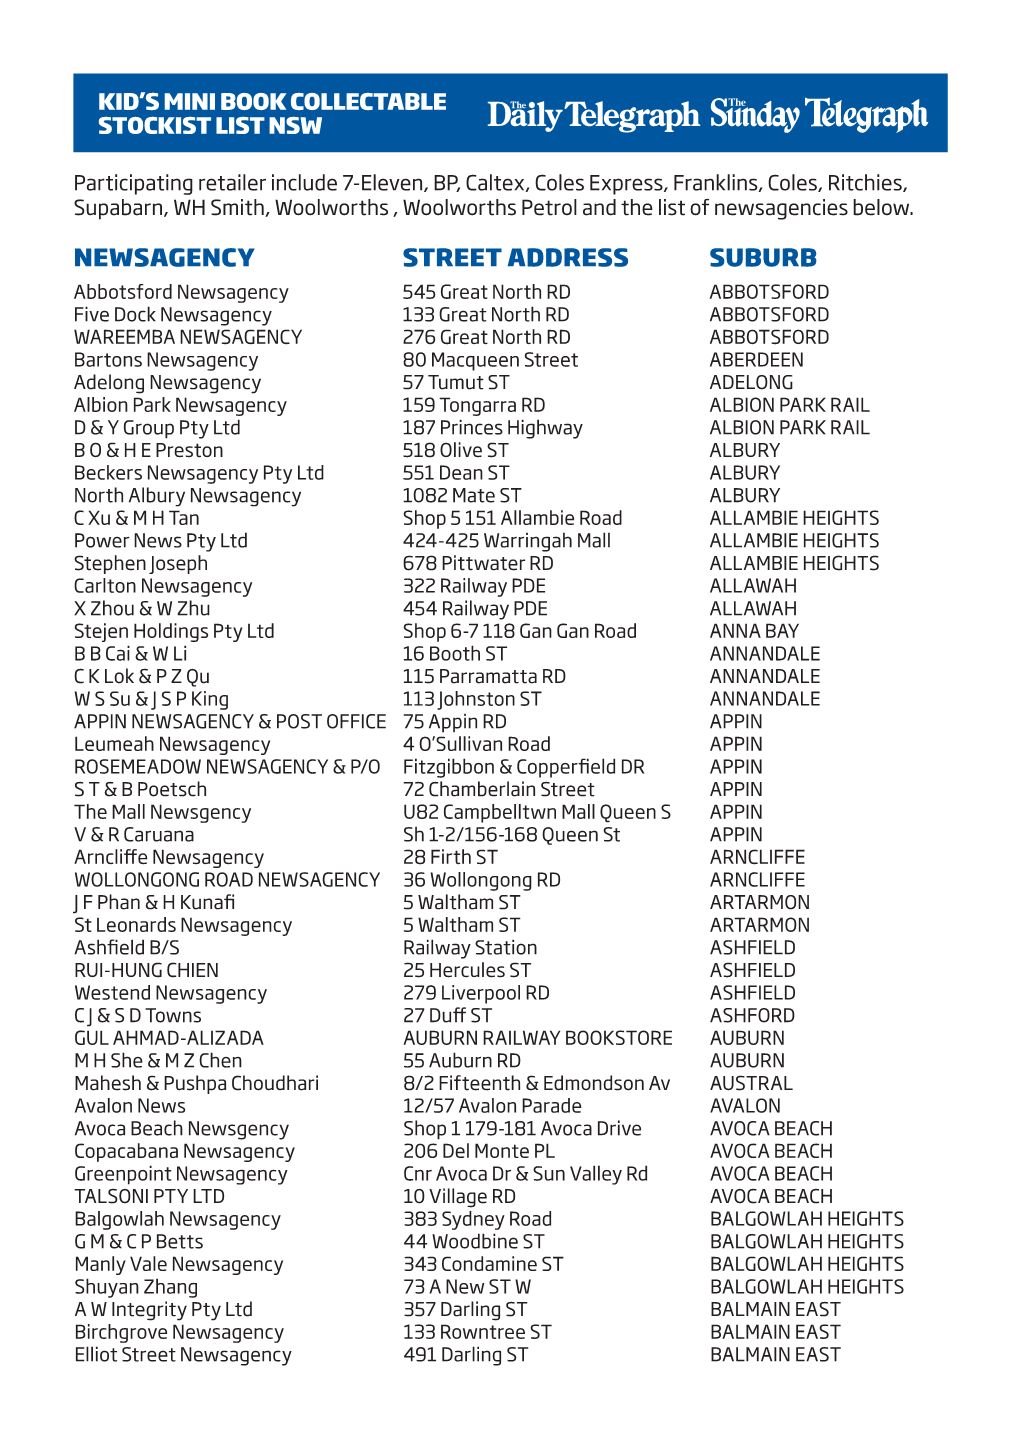 Newsagency Street Address Suburb